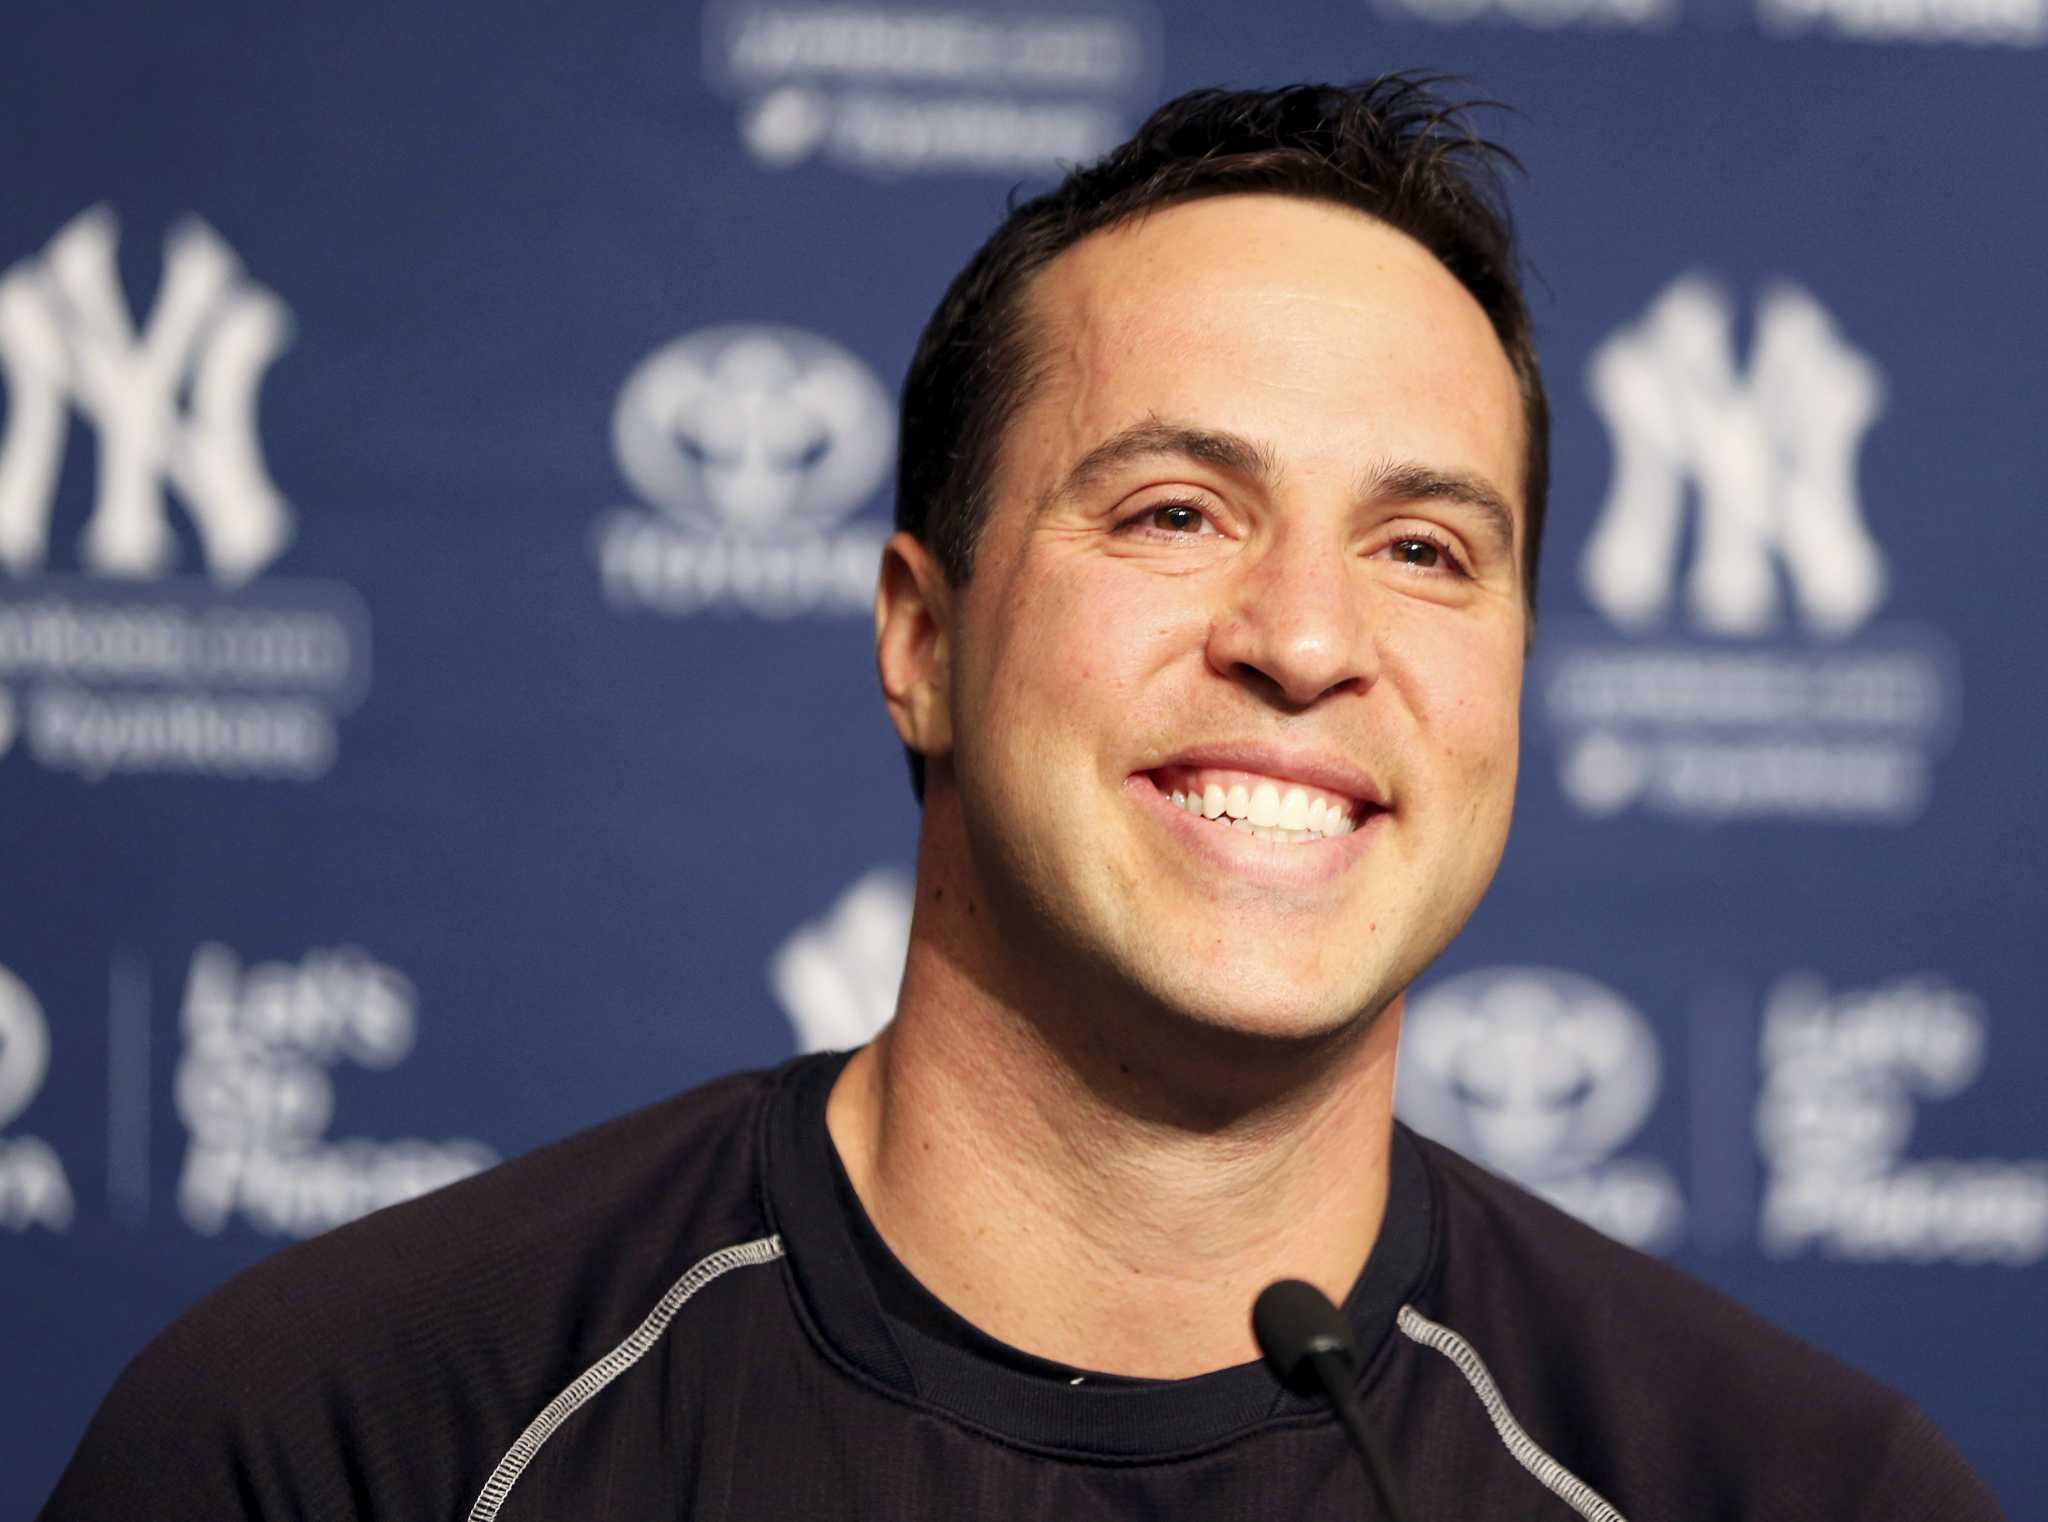 Yankees first baseman Mark Teixeira announces retirement